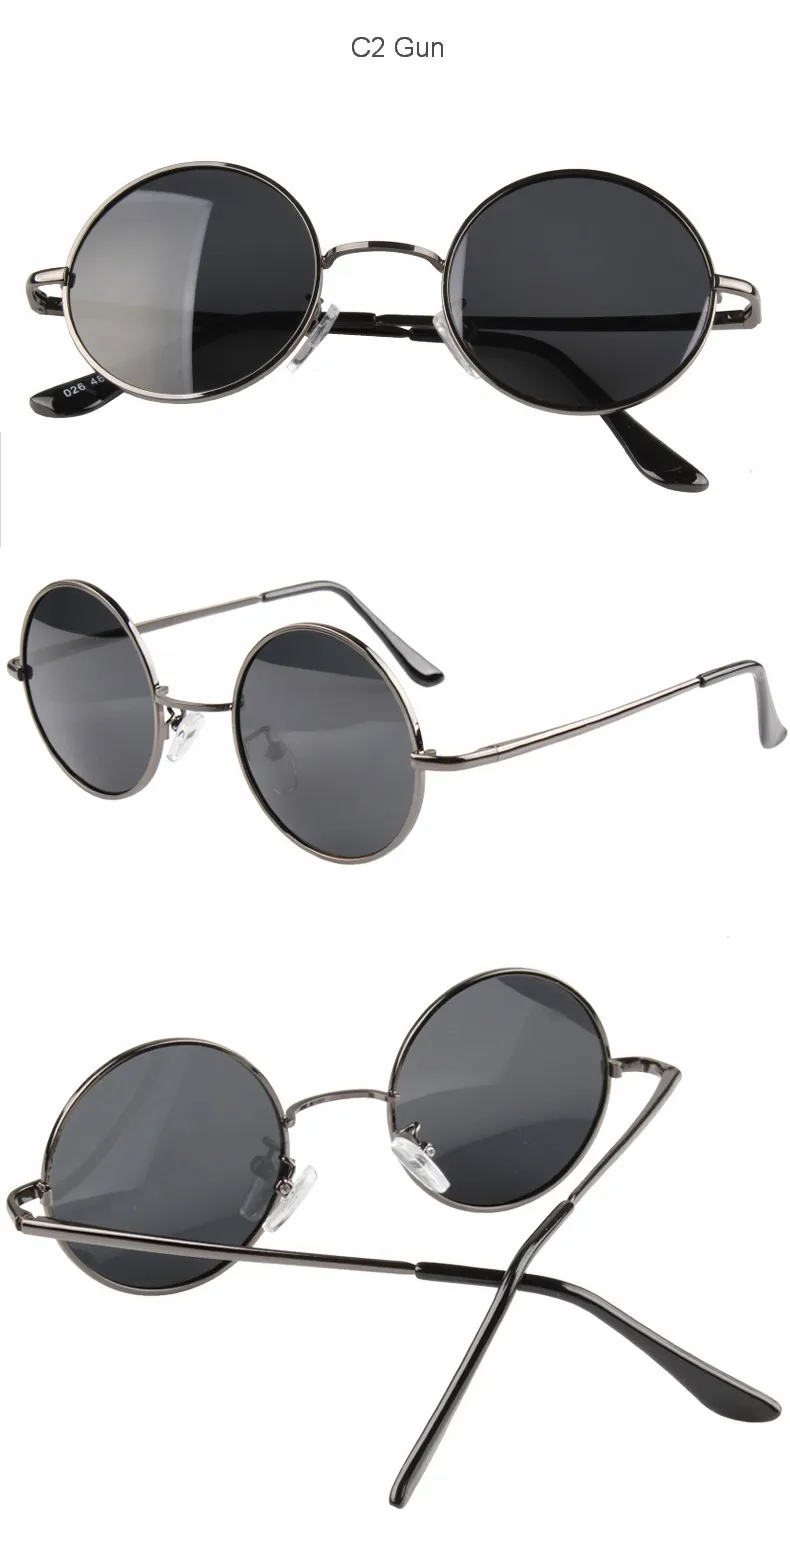 MYT_0256 Retro Round Polarized Sunglasses Men Women Brand Designer Male Female Sun Glasses Metal Frame Eyewear Driving UV400